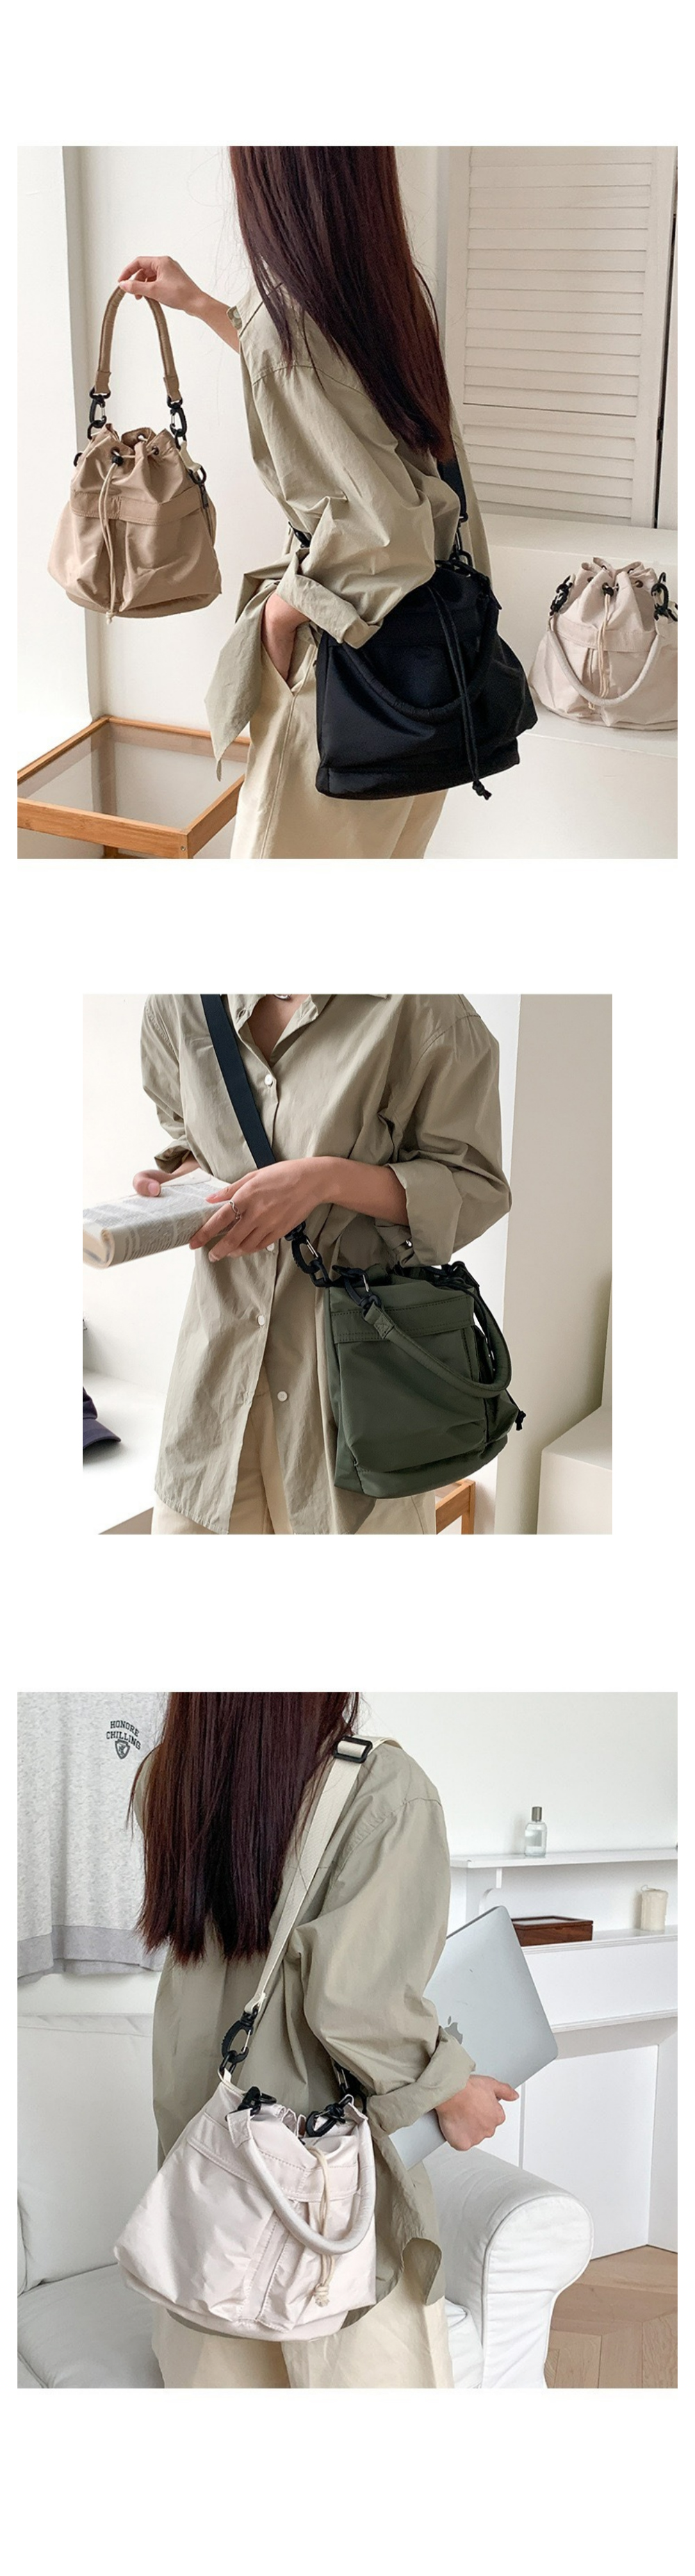 anello / SABRINA 2Way Mini Shoulder Bag ATT0505